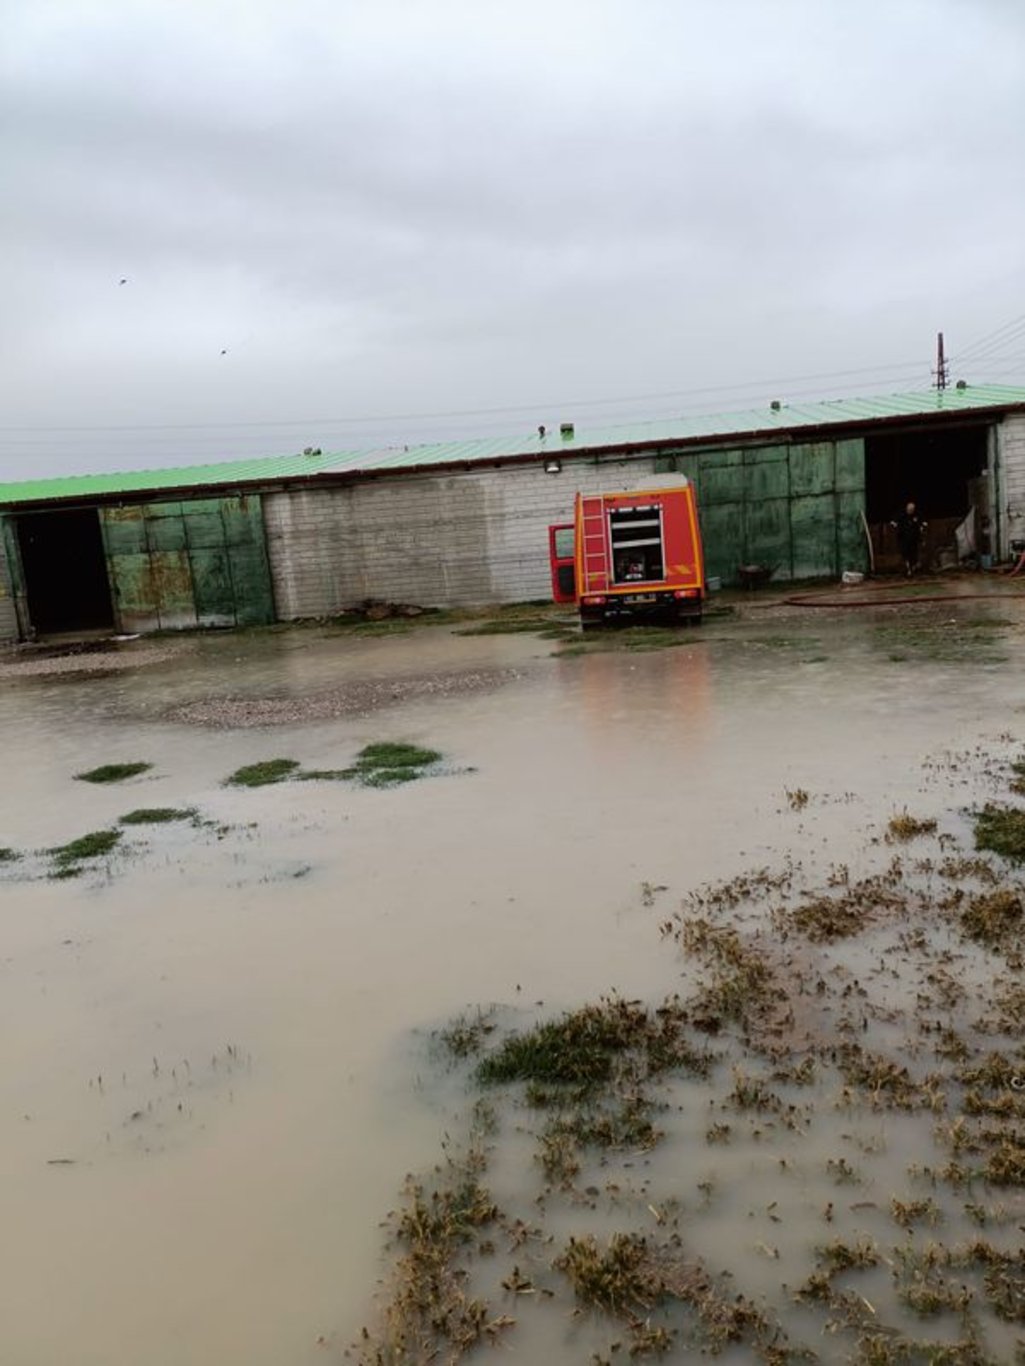 Konya'nın 3 ilçesinde sağanak nedeniyle ev, iş yeri ve tarım alanlarını su bastı